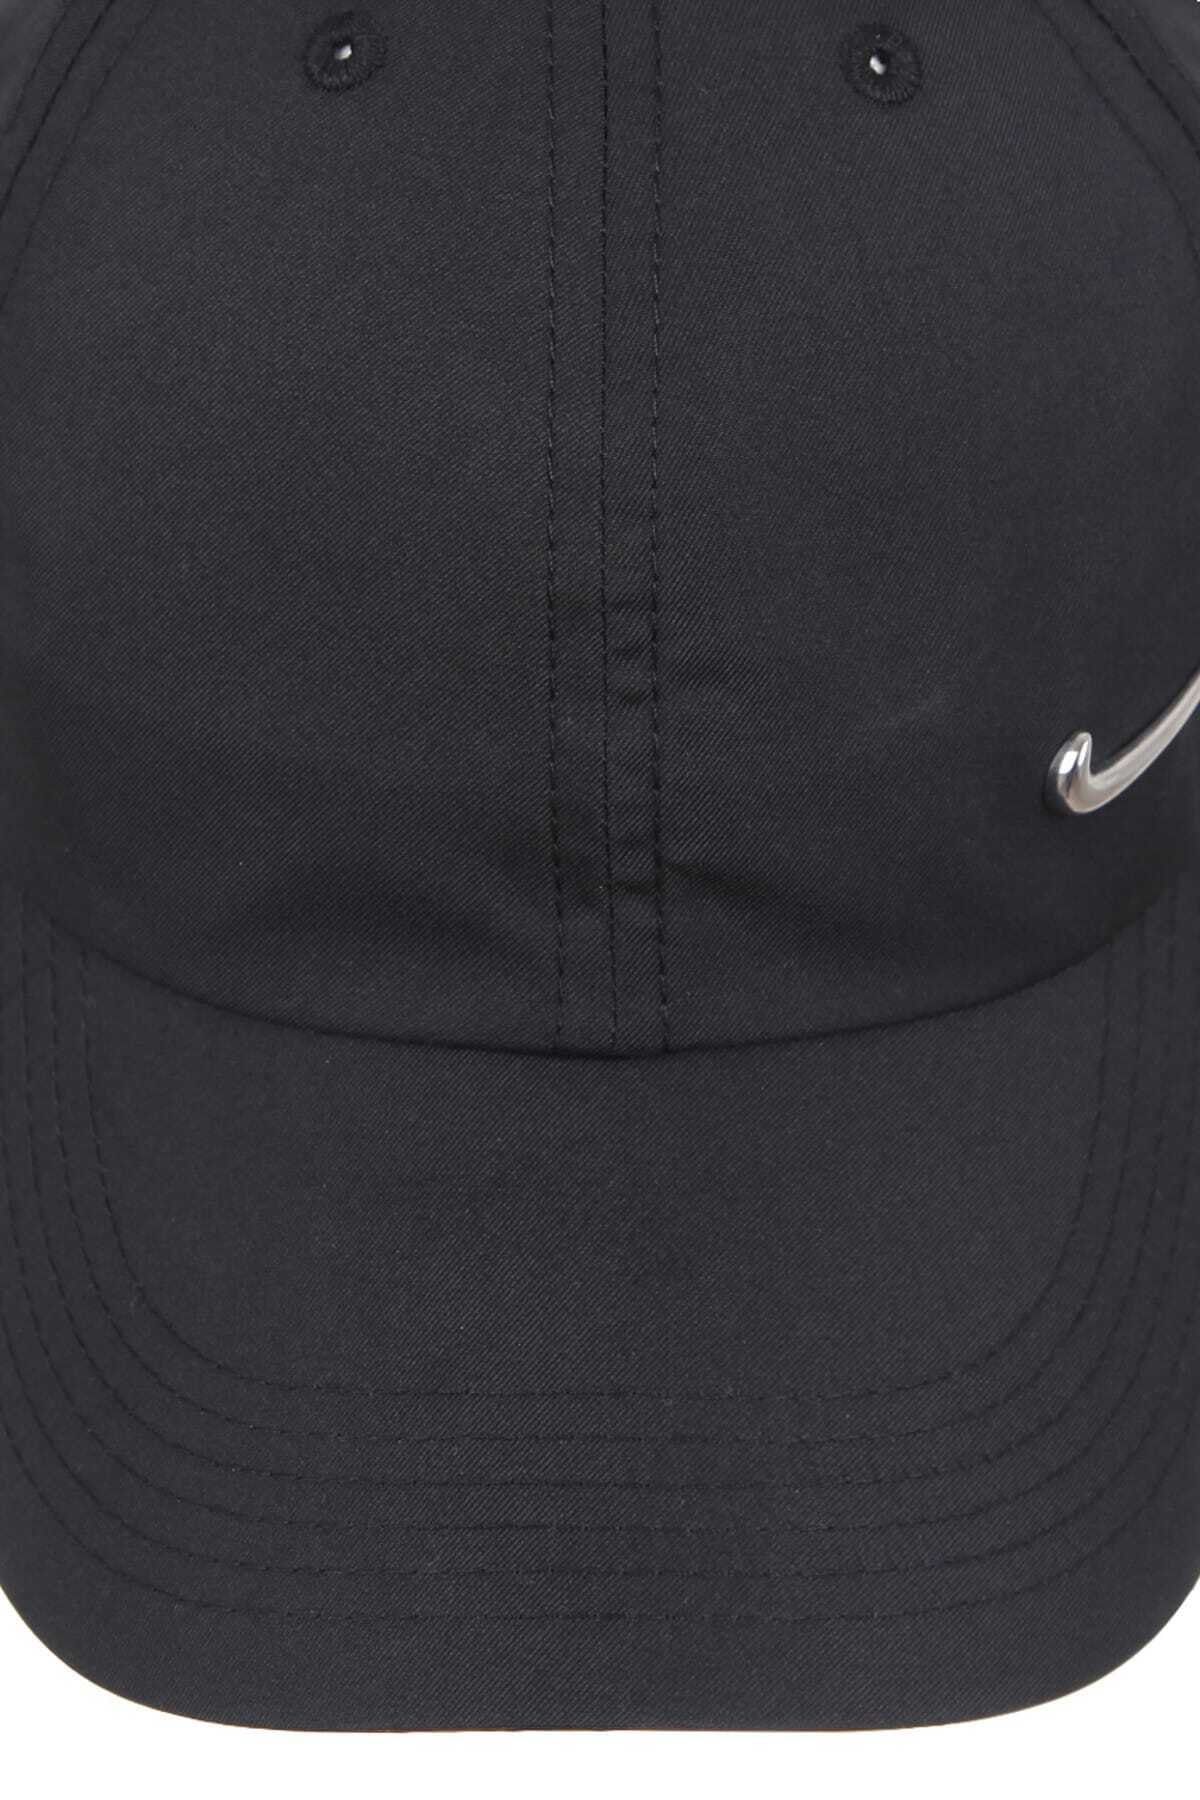 Nike AV8055-010 Nike Y NK H86 Cap Metal Swoosh Kids Hat Black